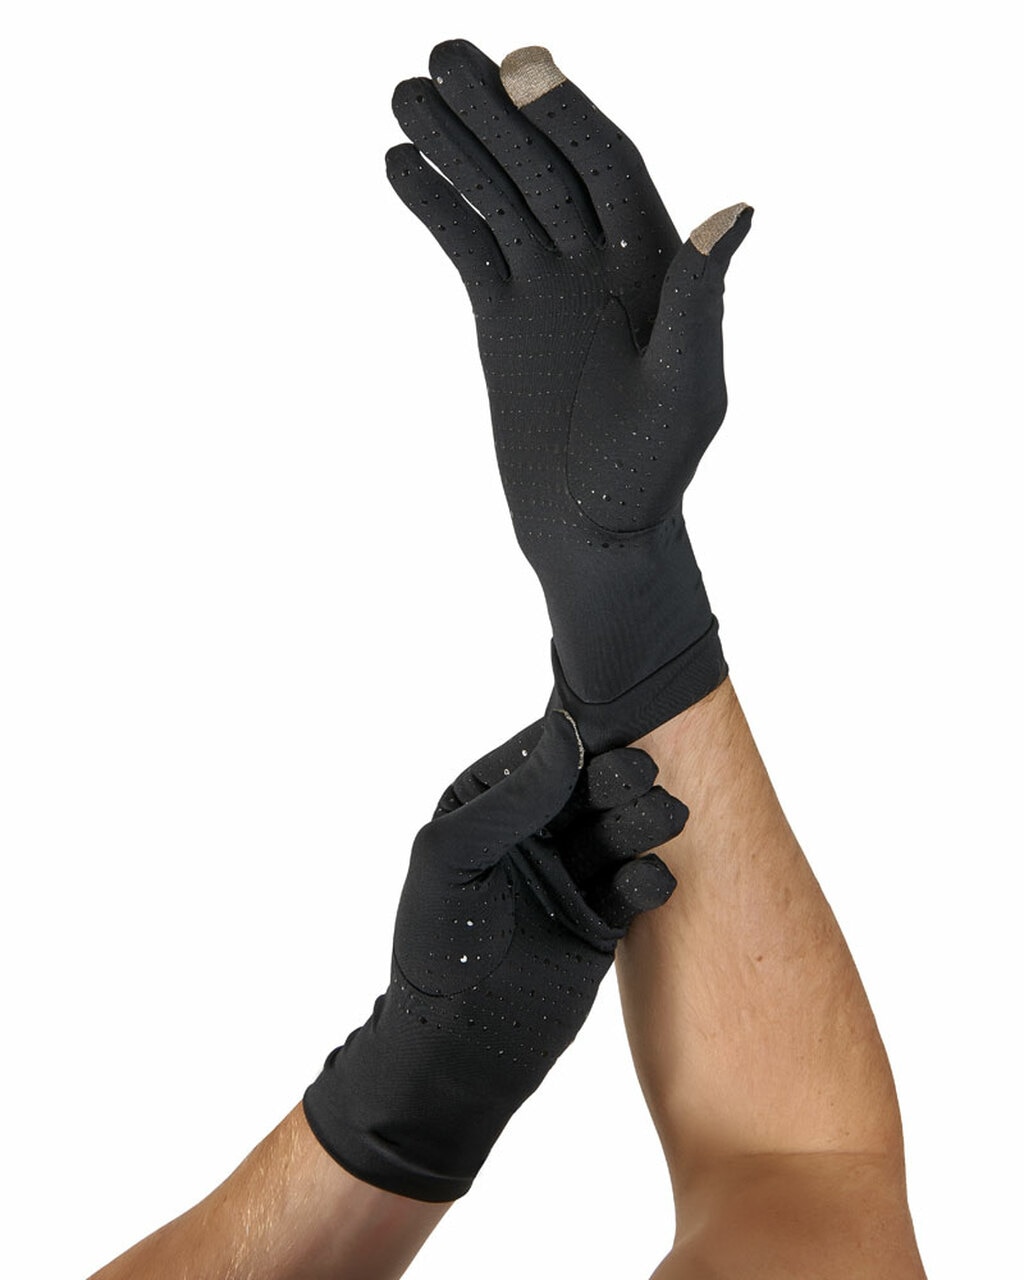 Tommie Copper Men's Core Compression Full Finger Gloves, Black, Large